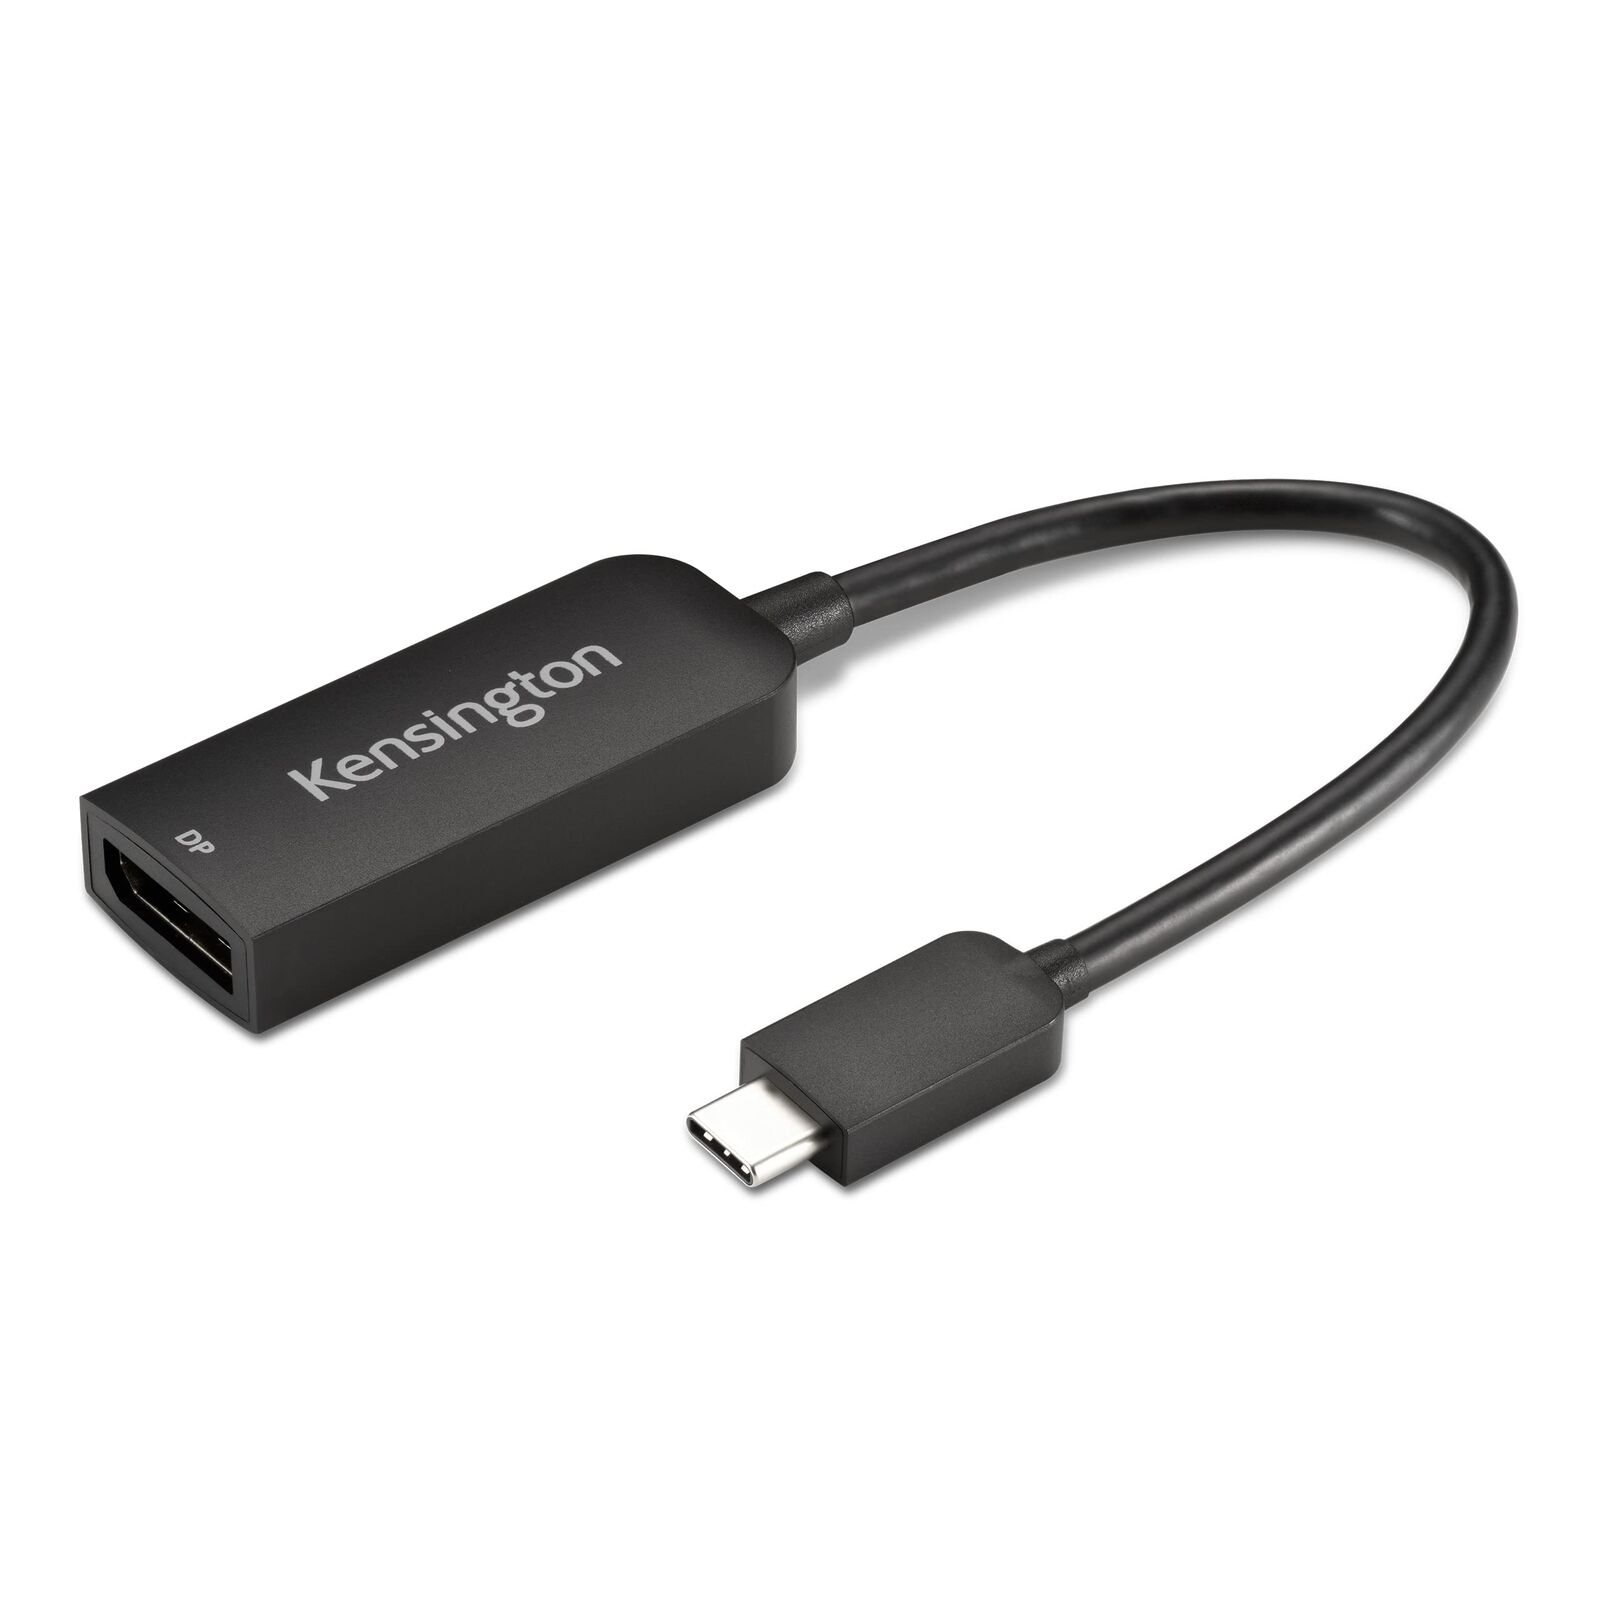 Kensington USB C to DisplayPort 1.4 Adapter Supports 4K, 8K Video, Thunderbolt 3